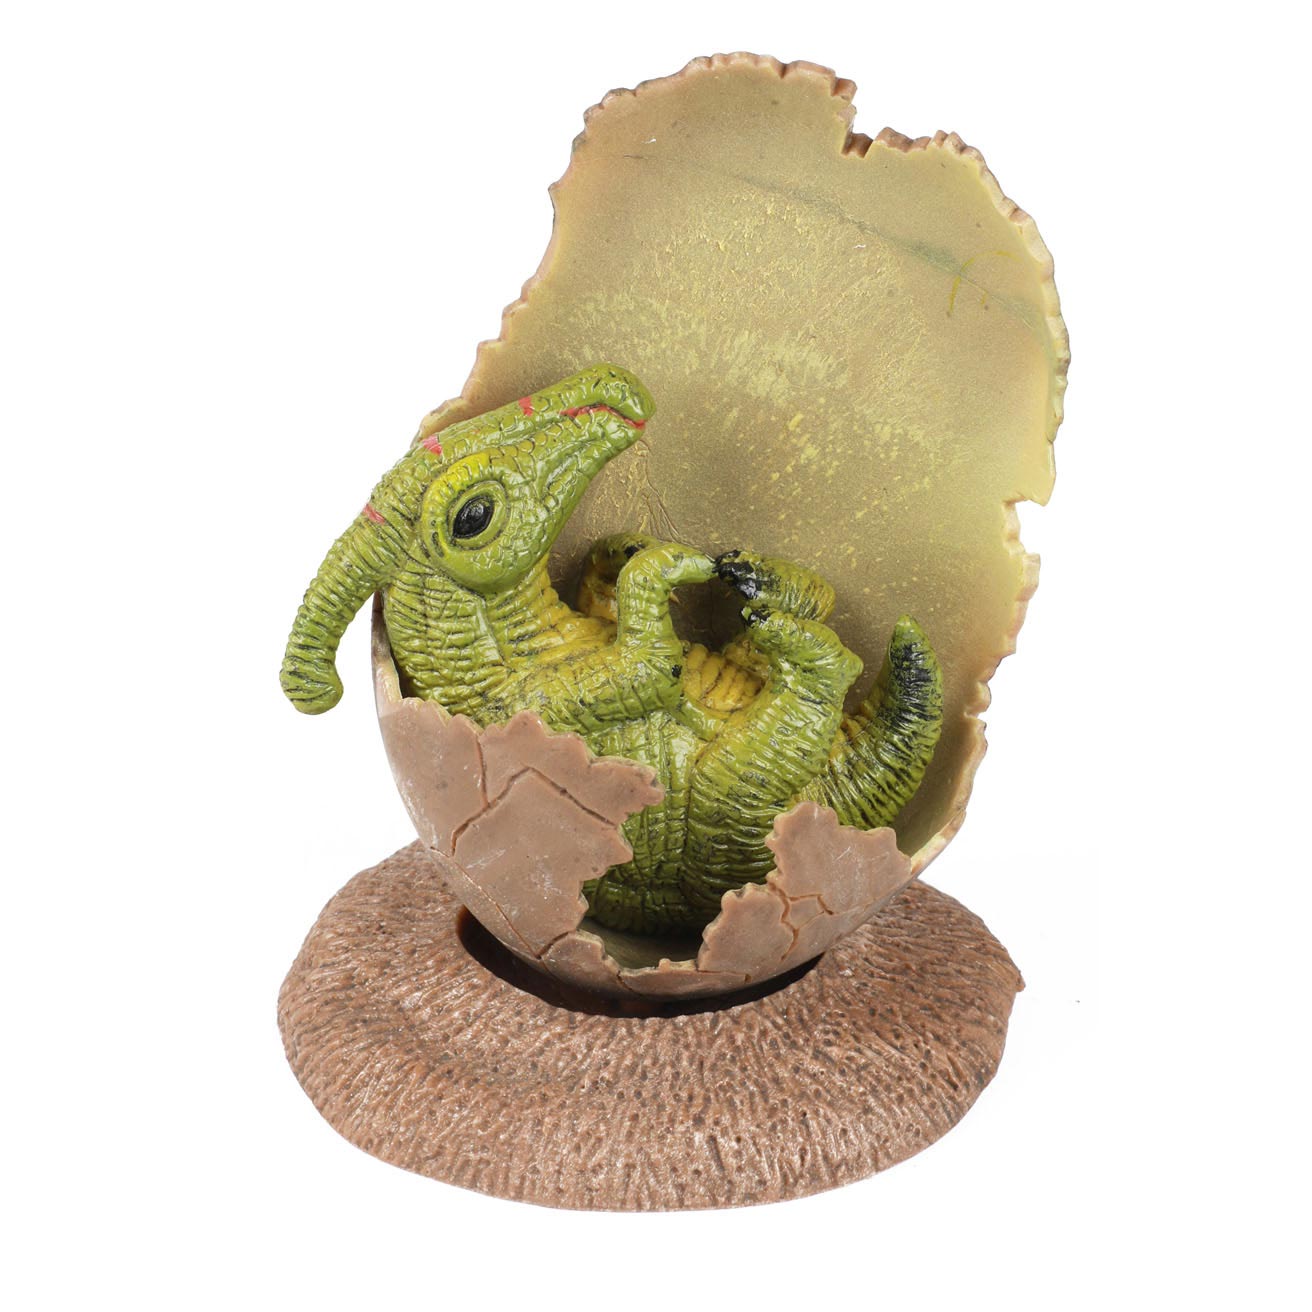 Welt der Dinosaurier Baby-Dino in zerbrochenem Ei